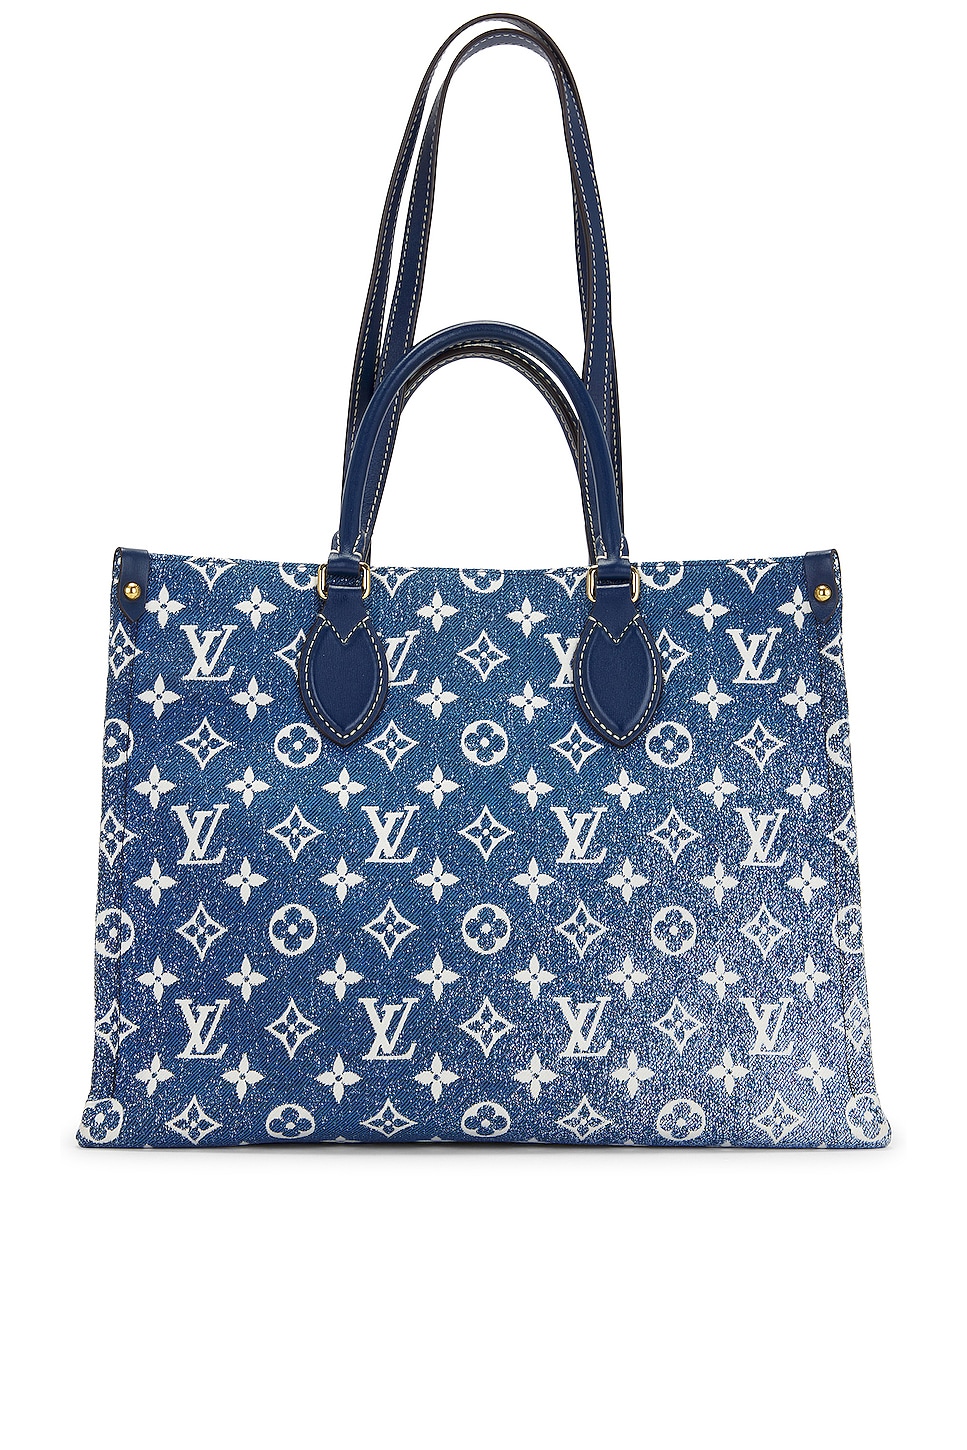 FWRD Renew Louis Vuitton Summer Stardust Monogram Nano Speedy Bag